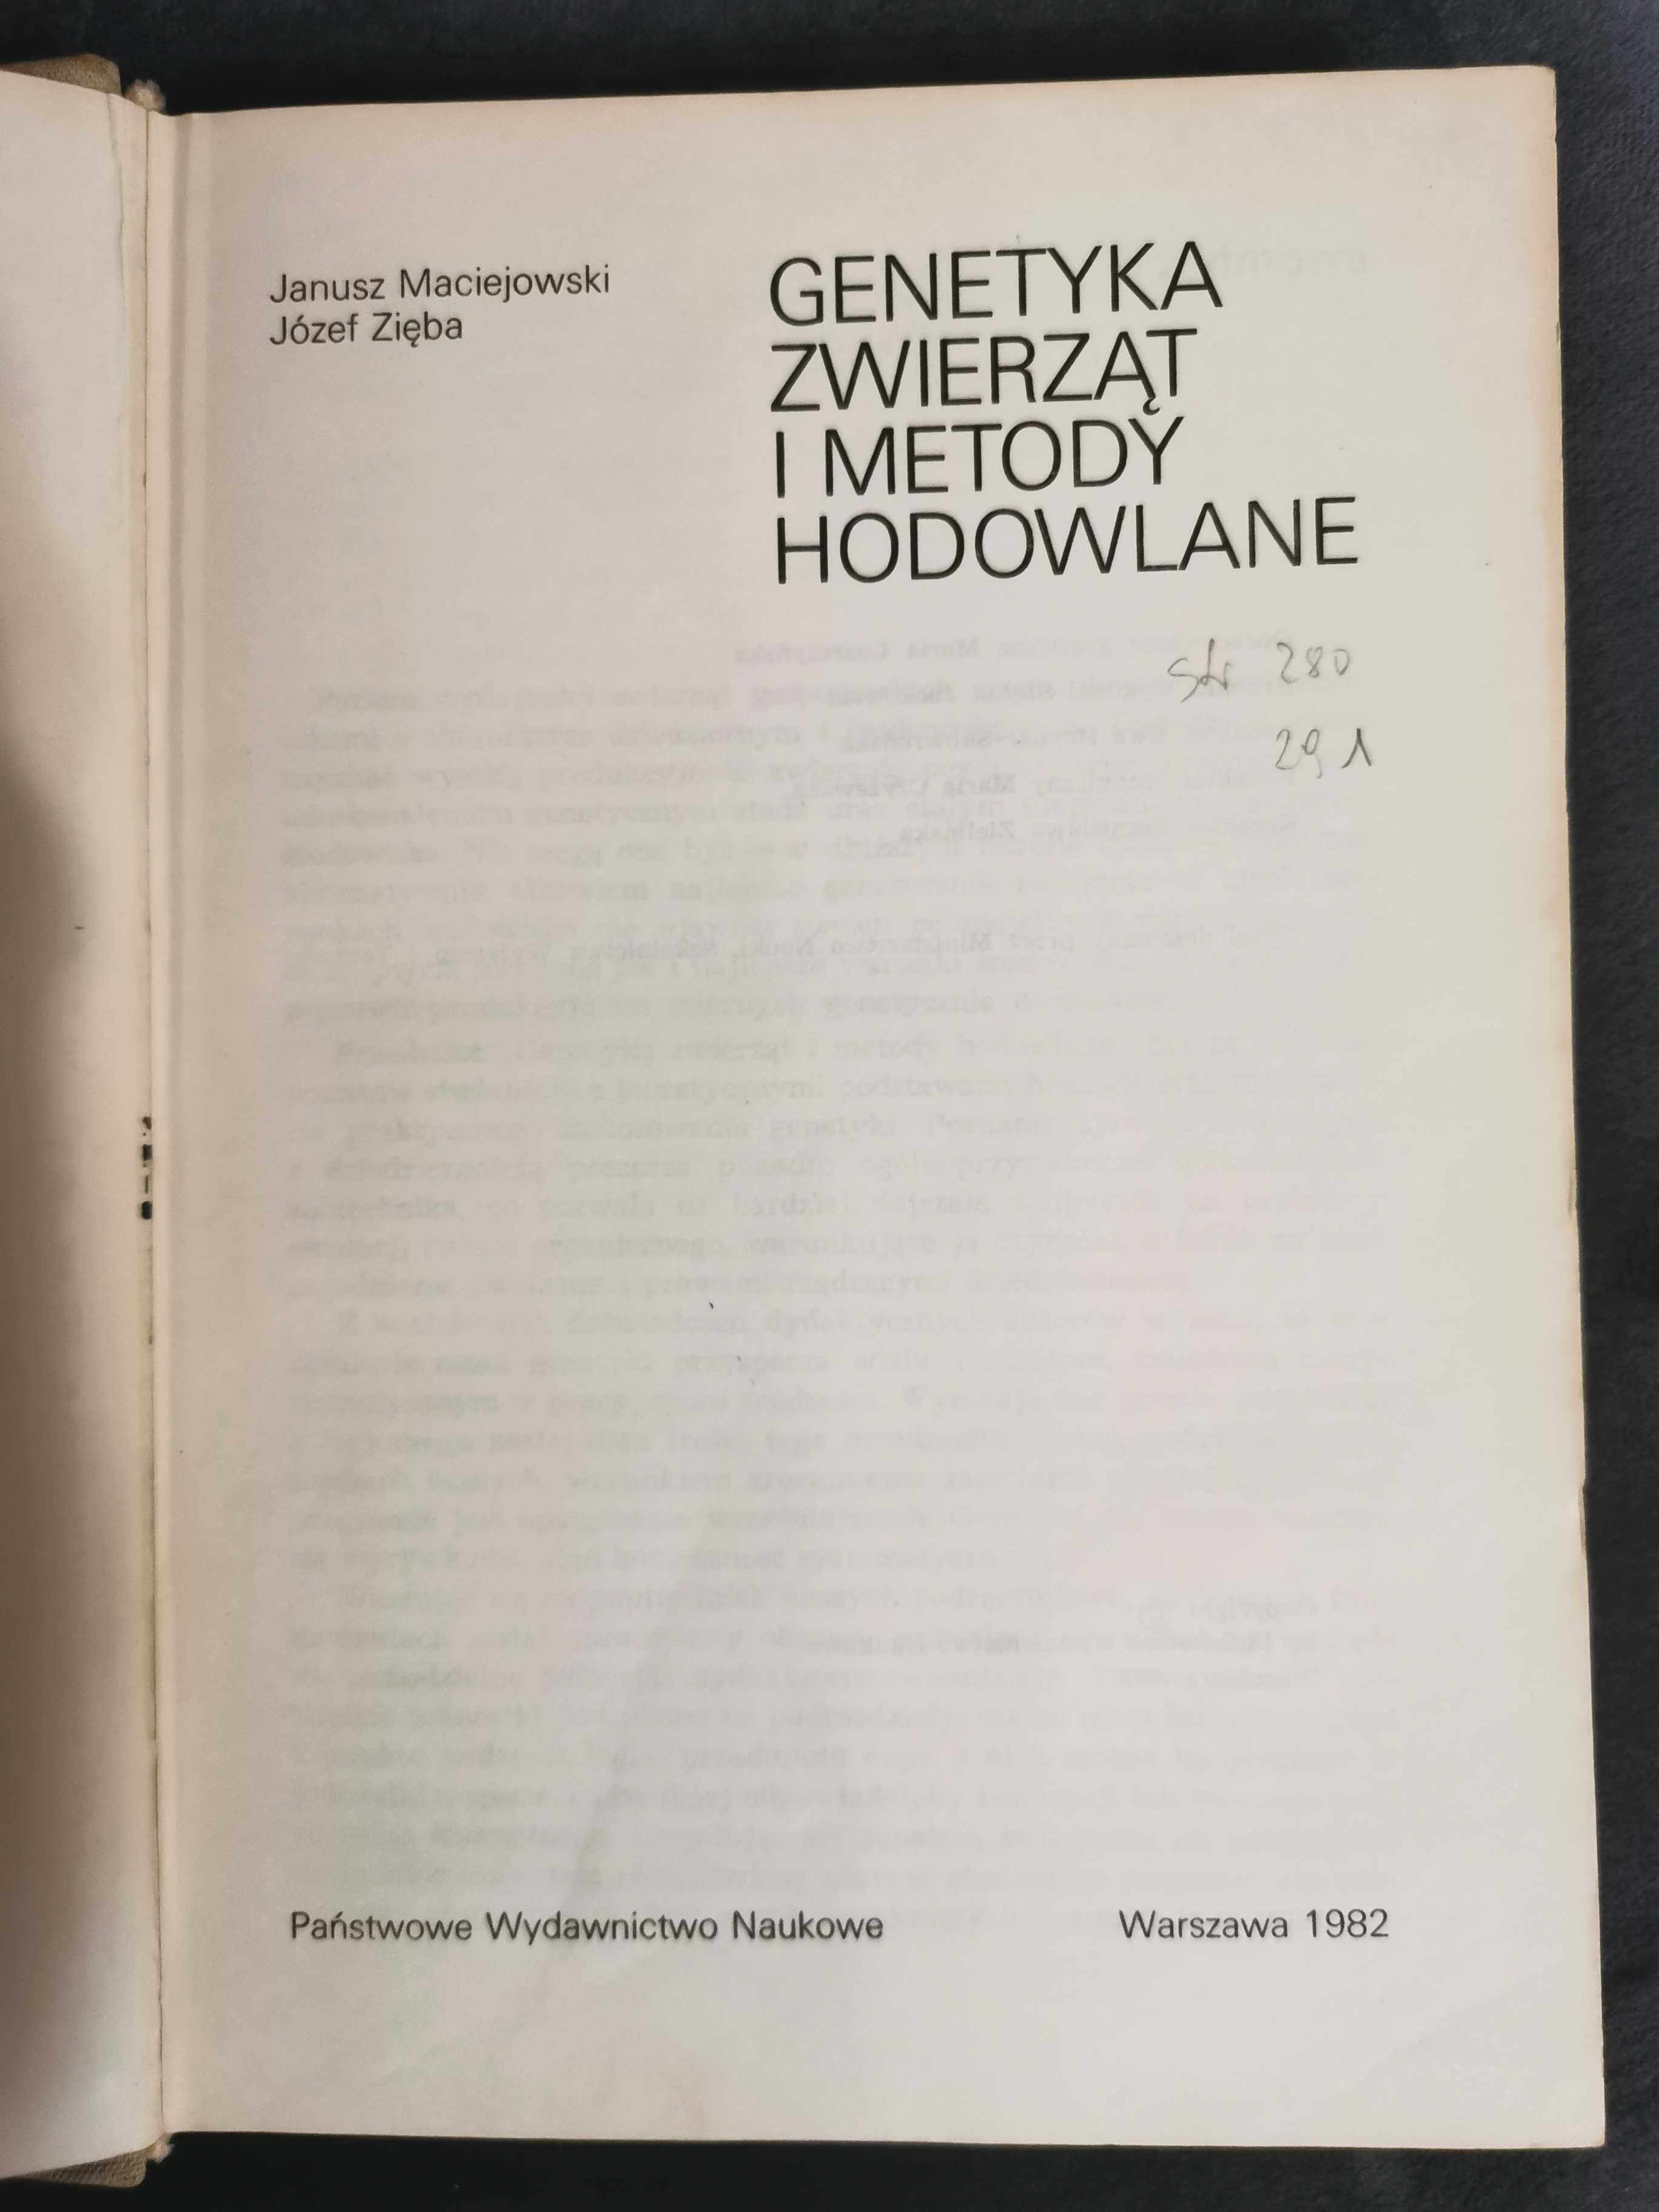 Genetyka Zwierząt i metody hodowlane (J. Zięba, J. Maciejowski, 1982)